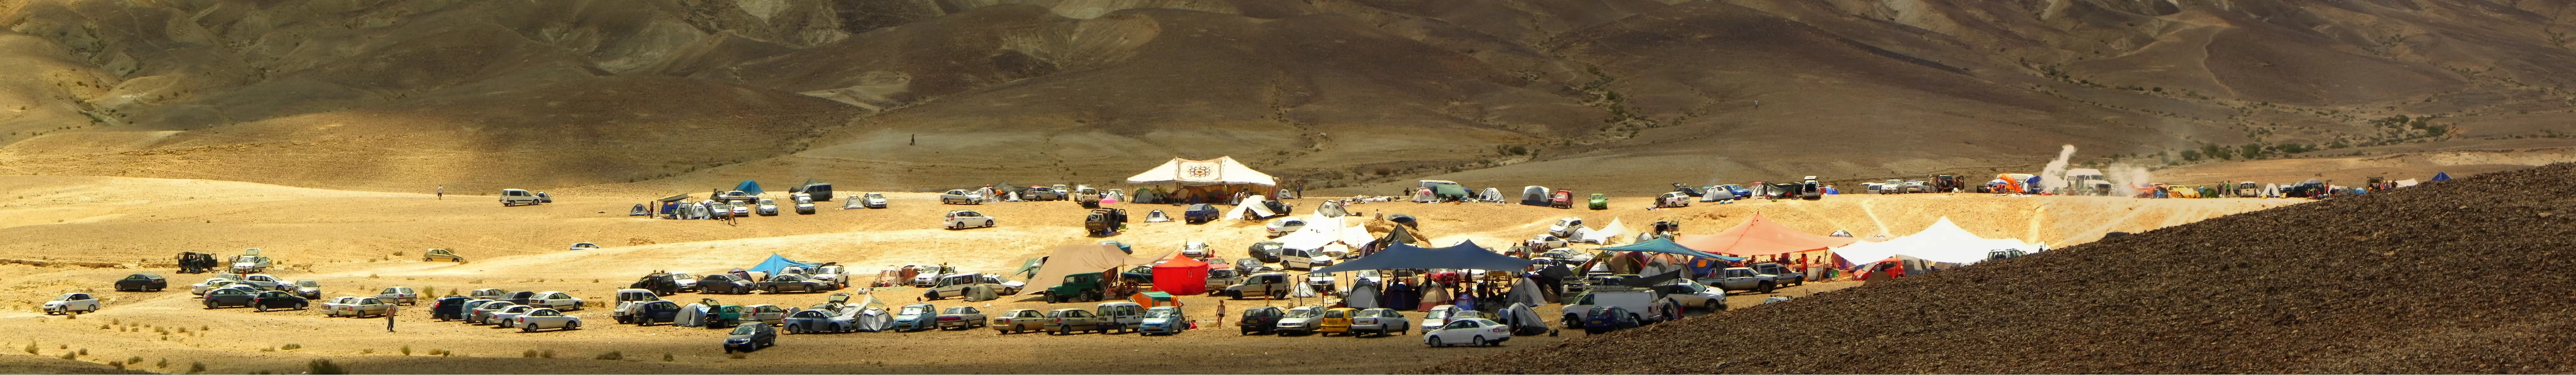 התכנסות במדבר - משה יפה -  - מק''ט: 156845